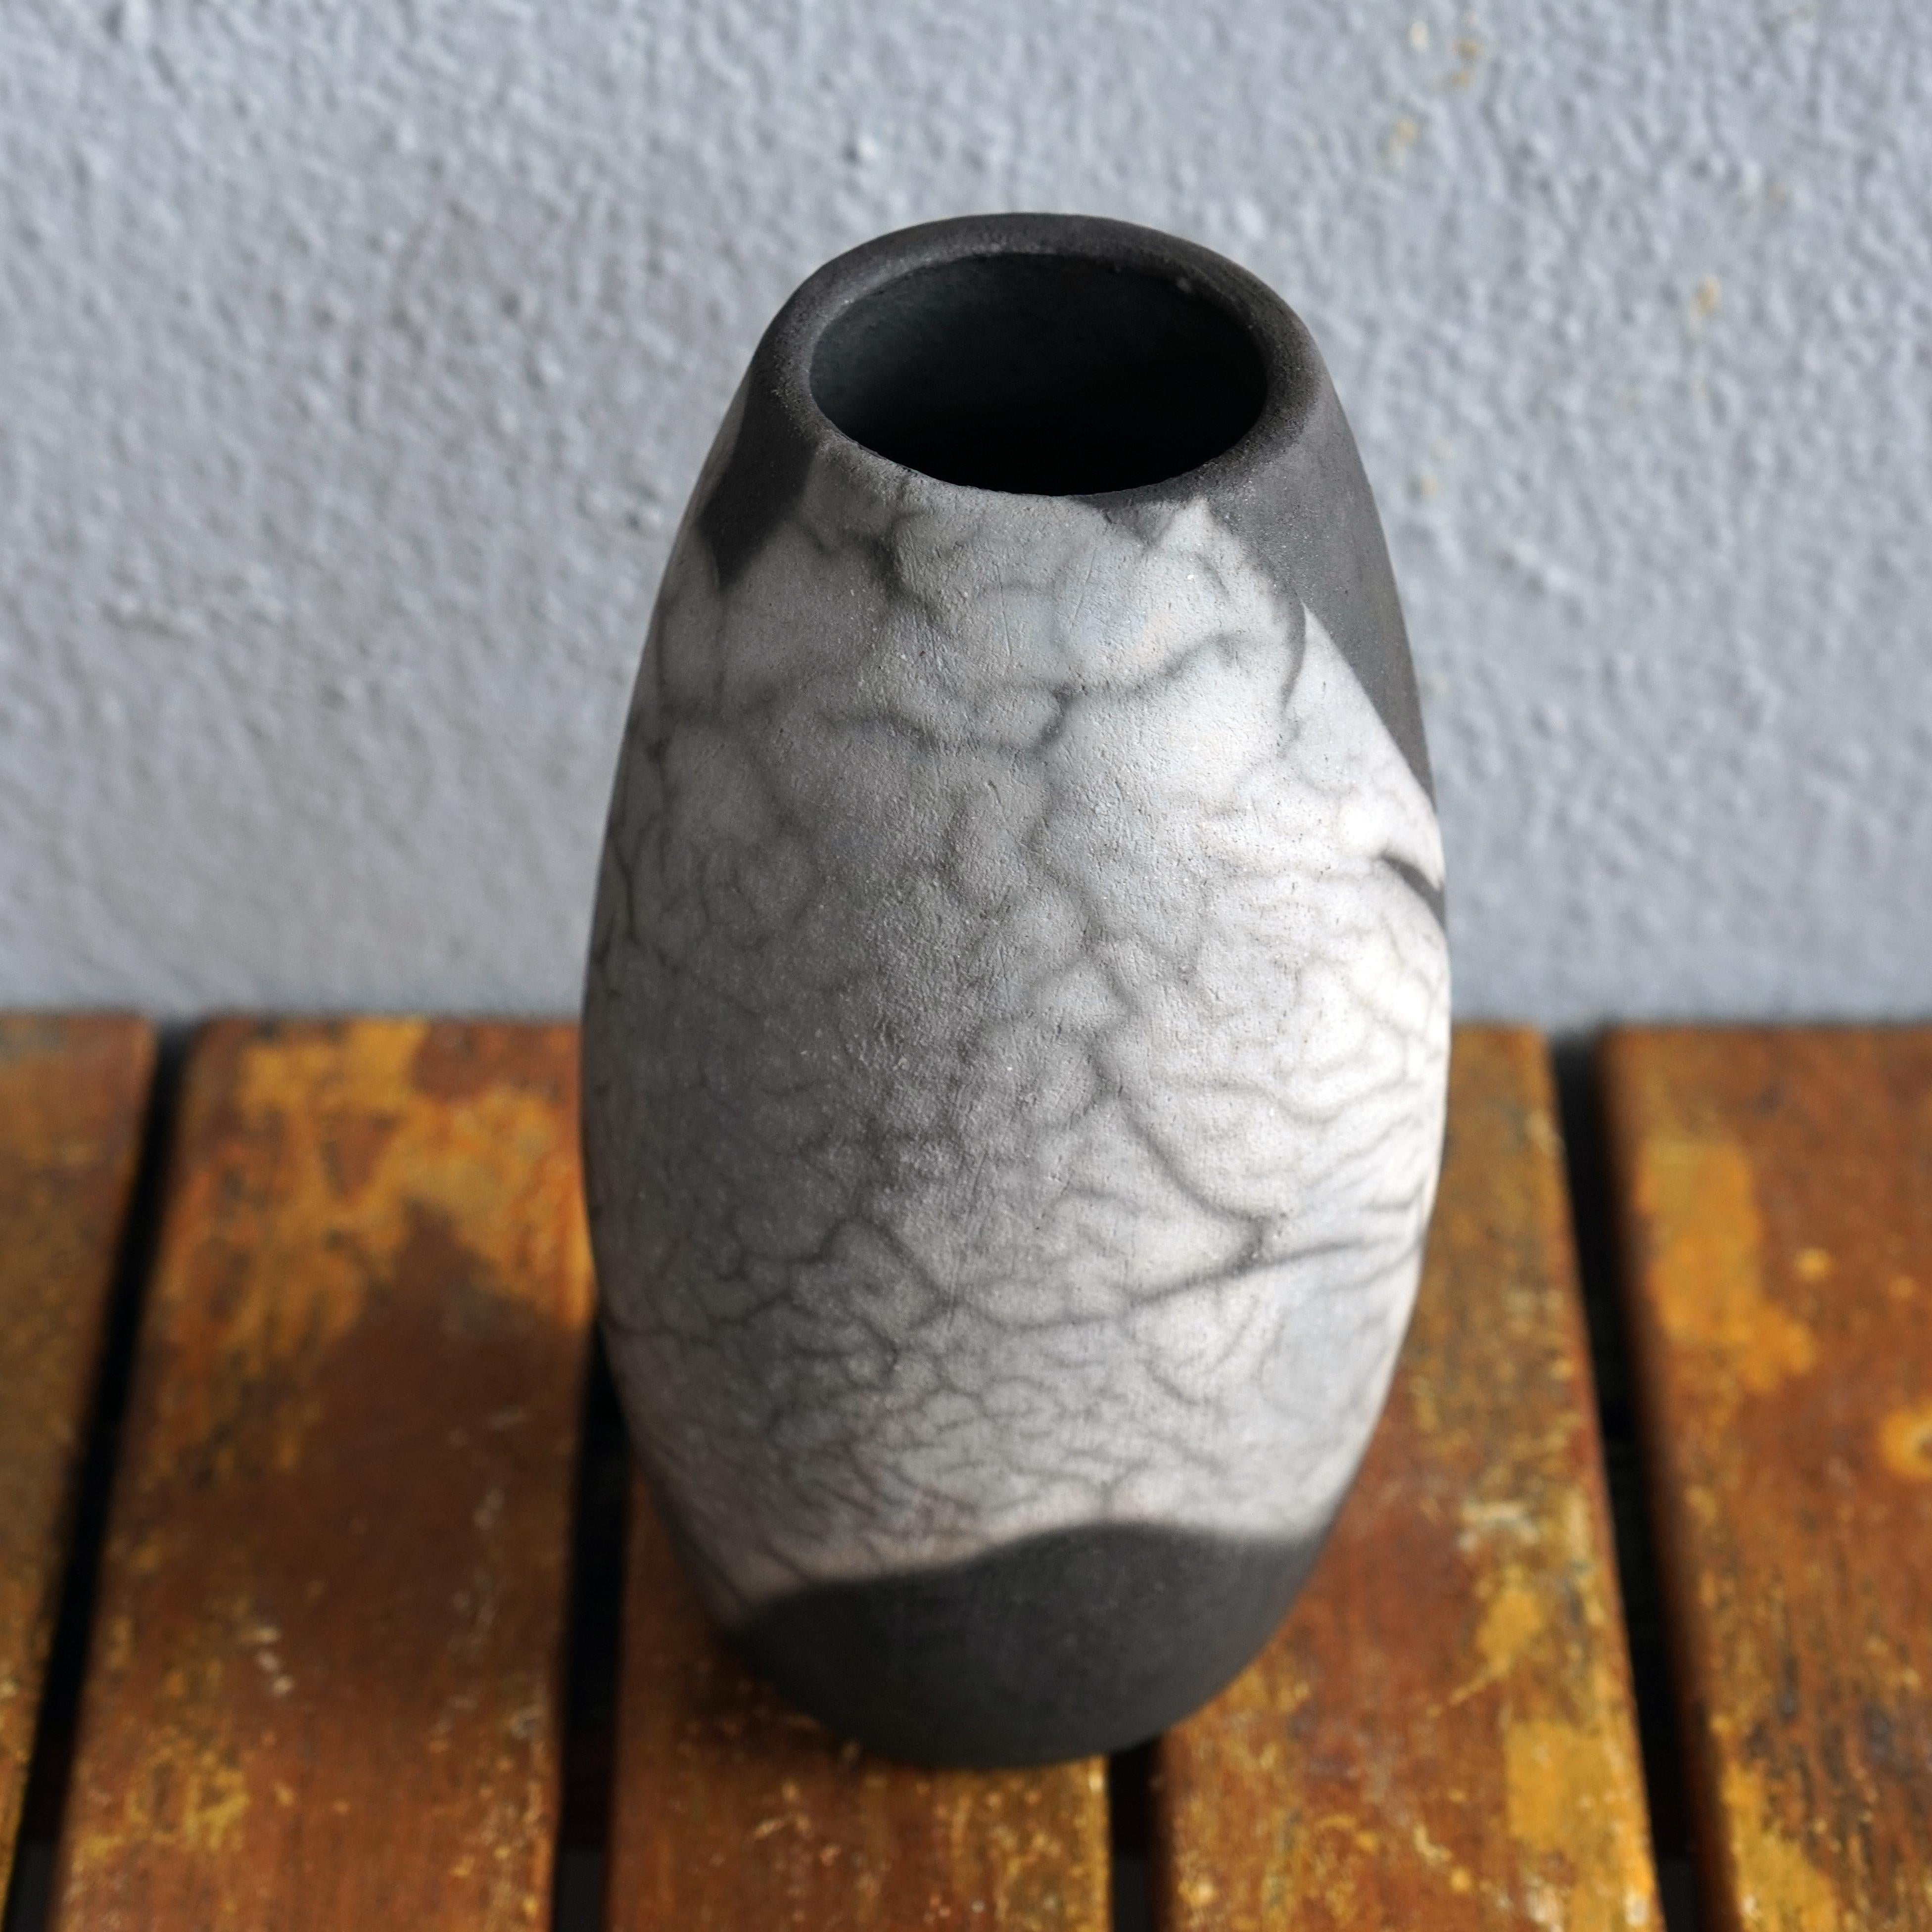 Tsuri ( ツリー ) ~ (n) Baum

Unsere Tsuri-Vase ist der klassischen Flaschenform nachempfunden, hat aber oben eine breitere Öffnung. In Kombination mit anderen RAAQUU BASICS Vasen würde sie bestimmt toll aussehen.

Sie können Ihren Raum mit der